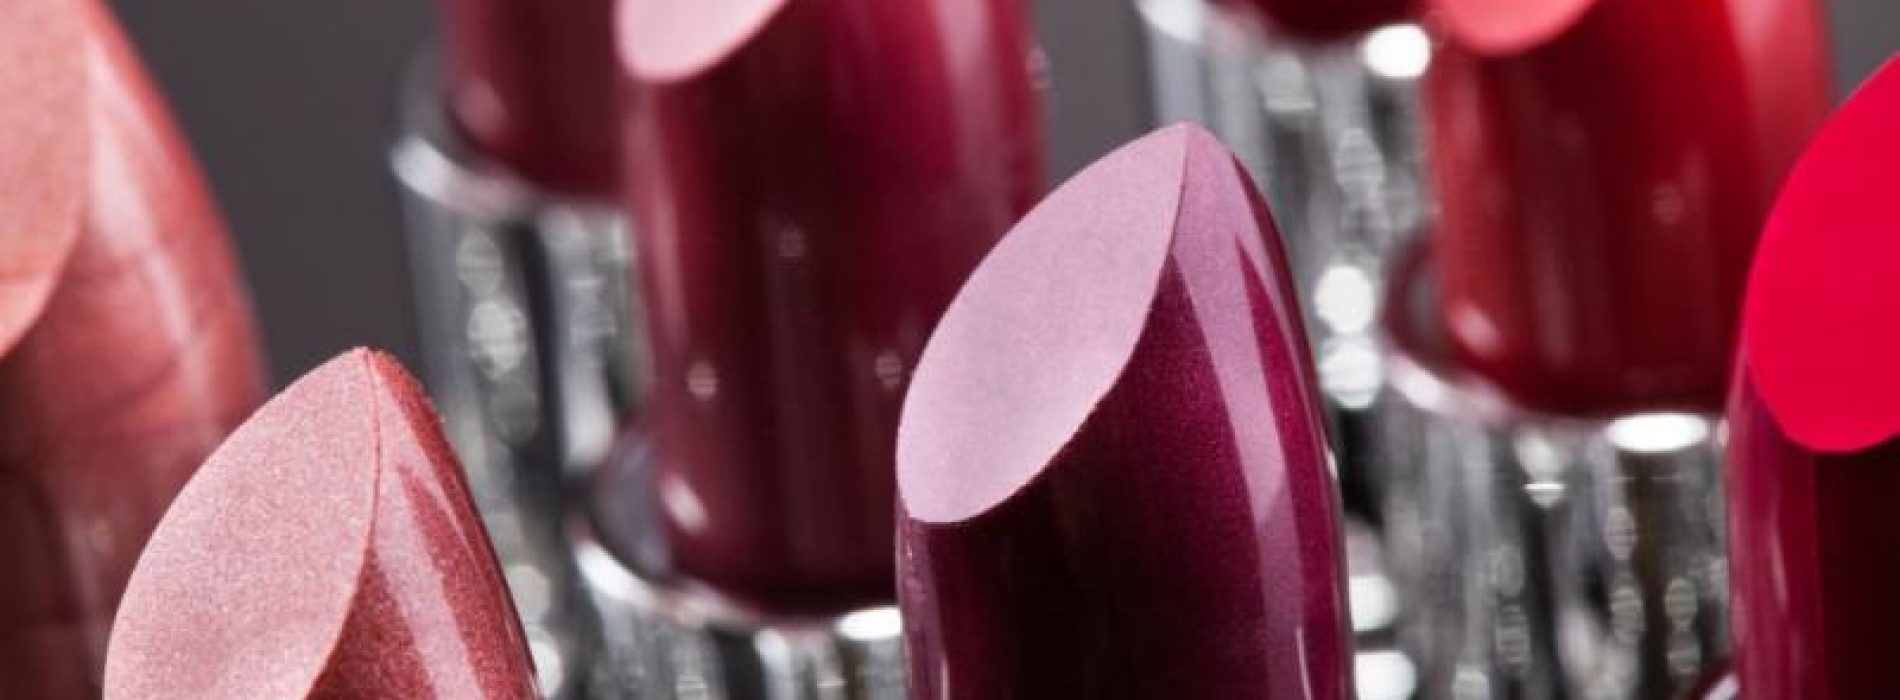 Let op: deze commerciële lipstickmerken bevatten chemicaliën en metalen die u ernstig kunnen schaden